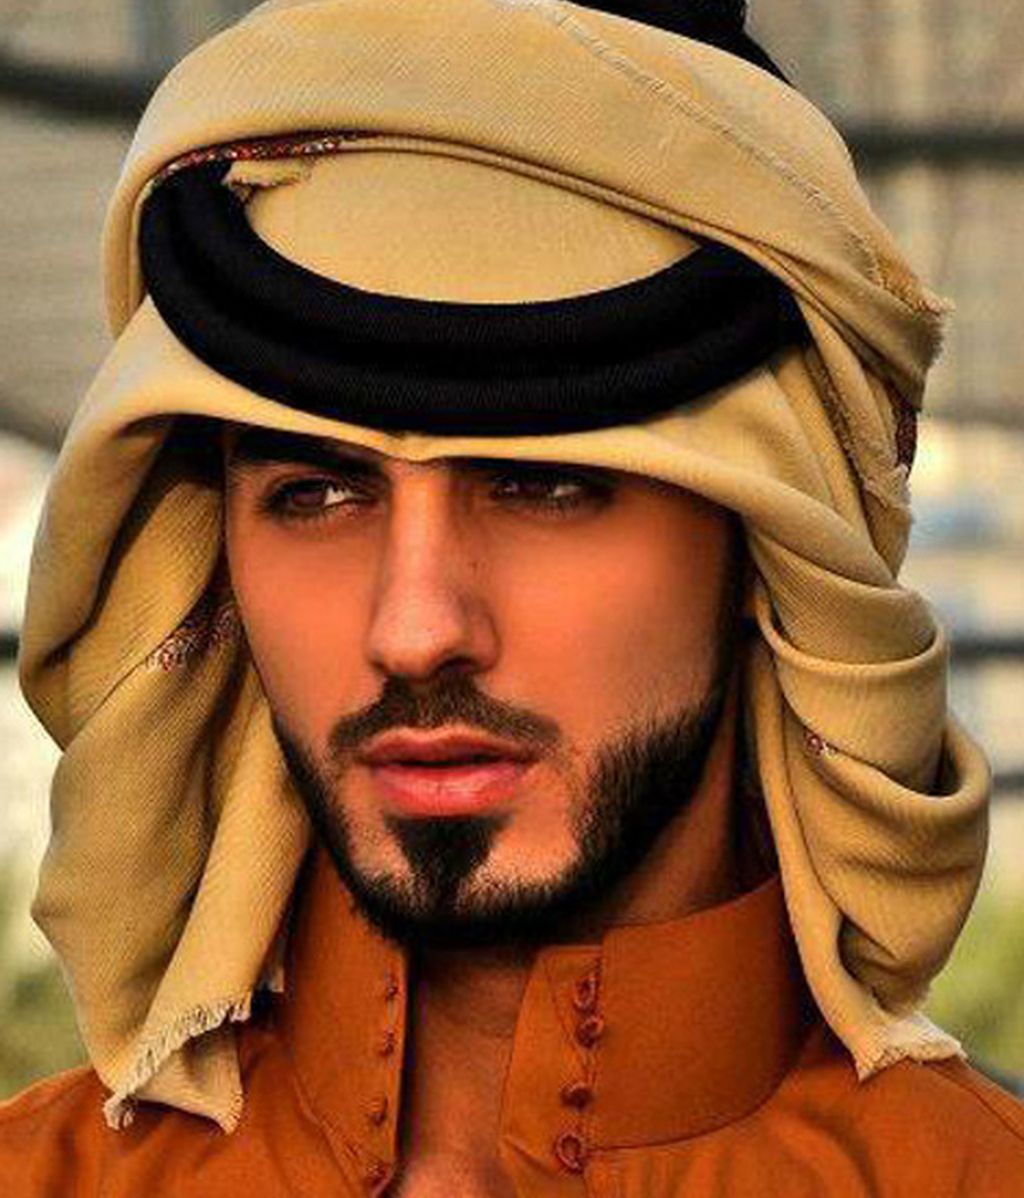 El hombre expulsado por guapo de Arabia Saudí al descubierto